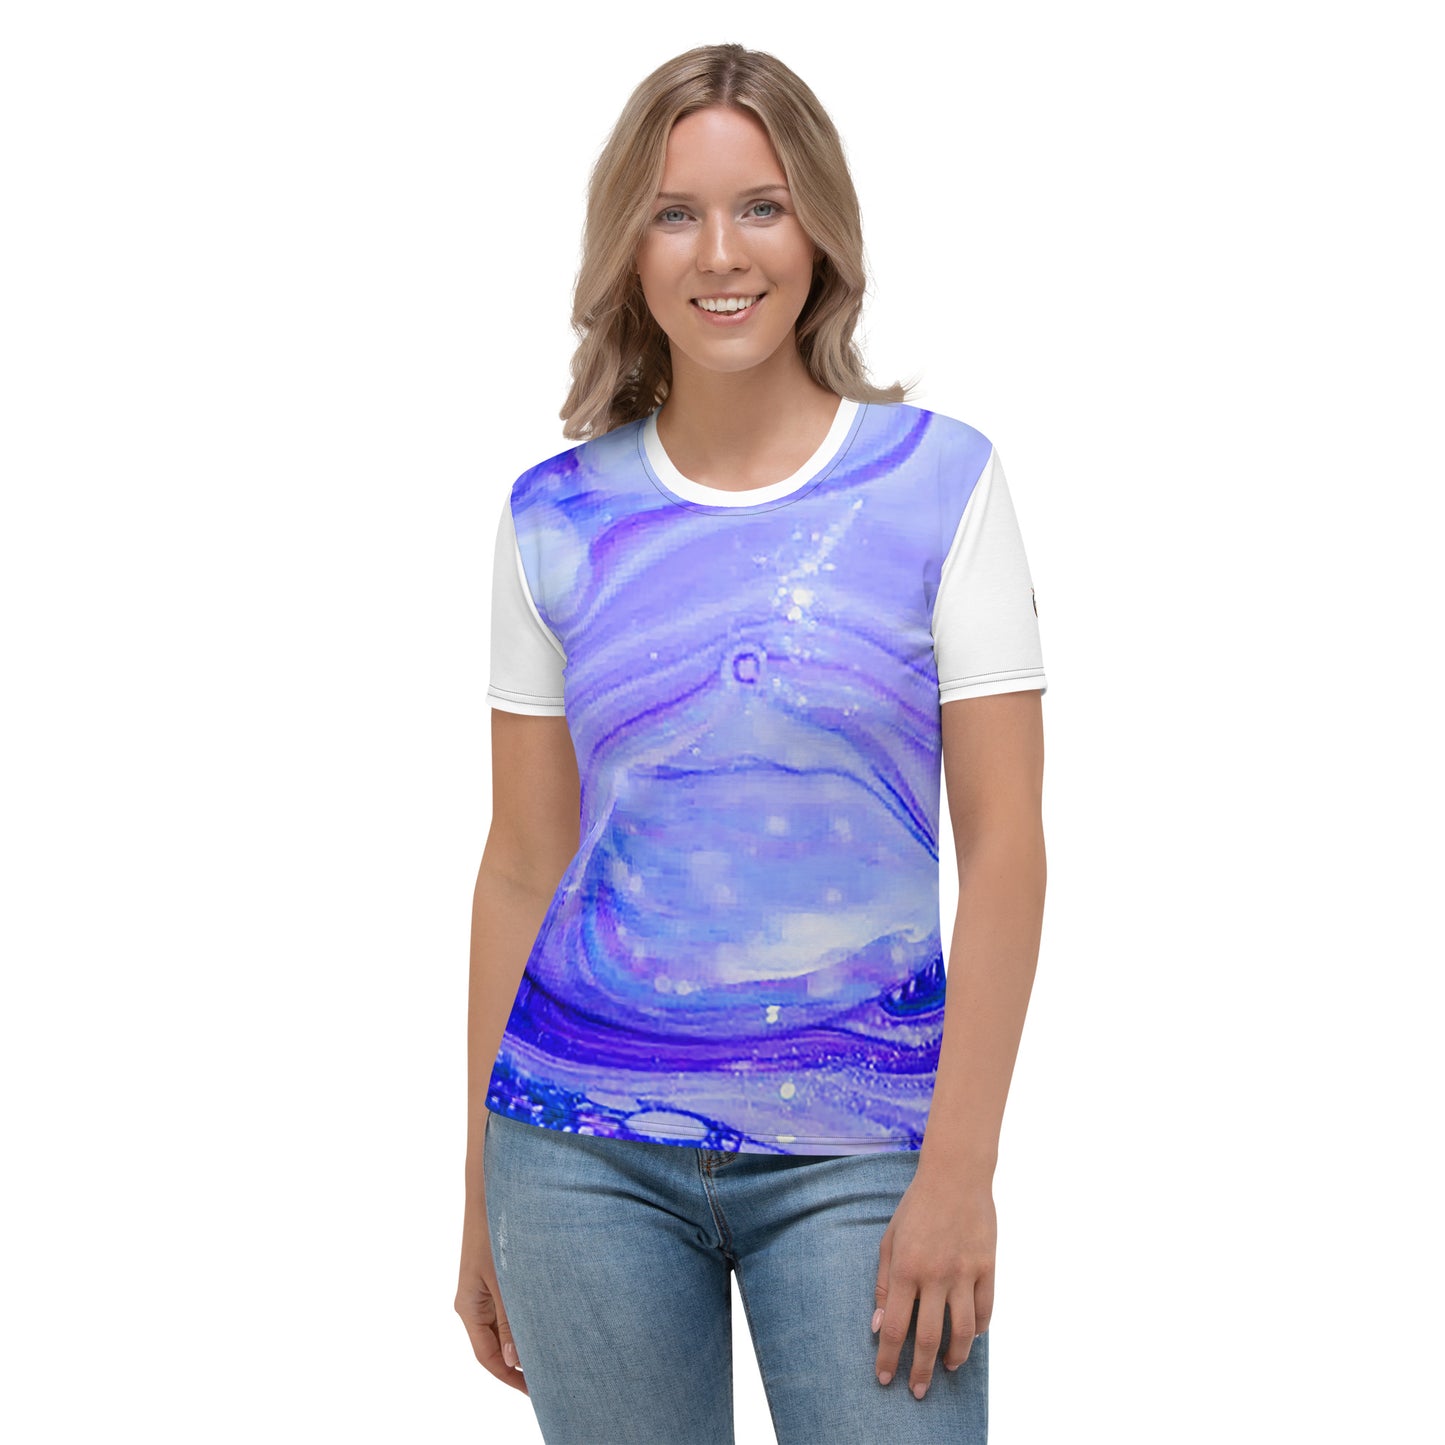 Snooty Fox Art Women's T-shirt - Romero Design